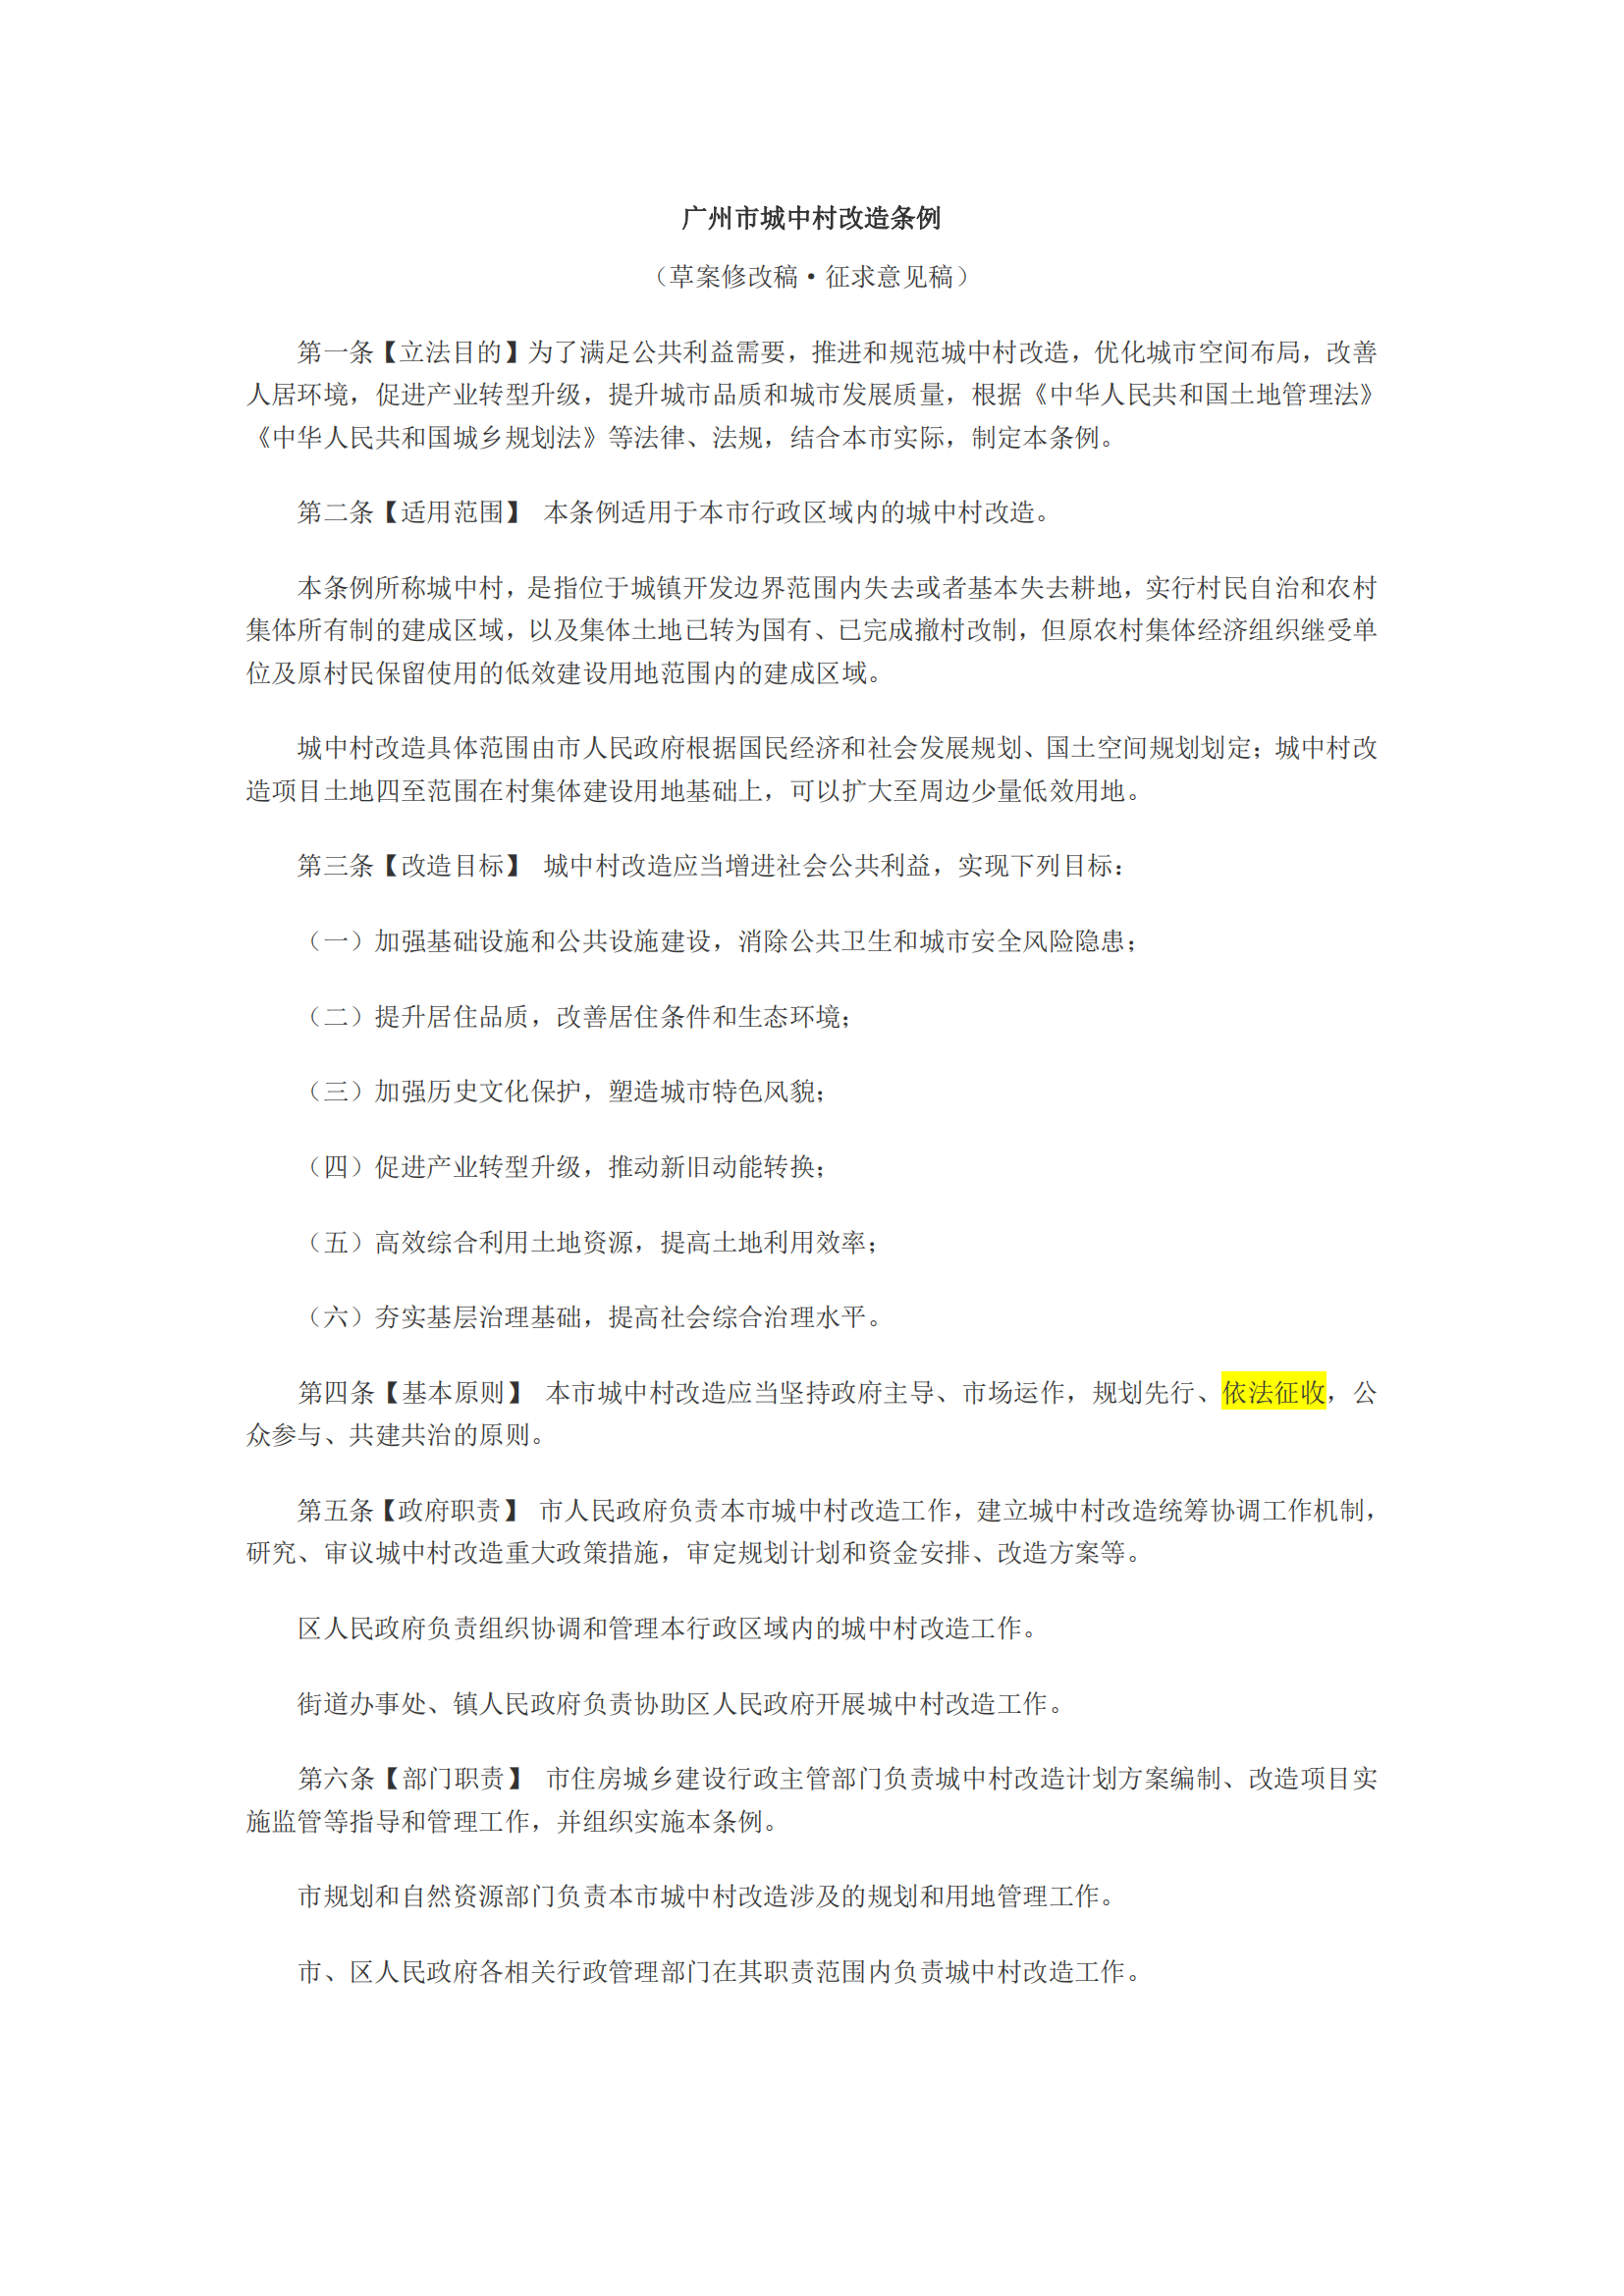 广州市城中村改造条例(征求意见稿，批注版)_00.png